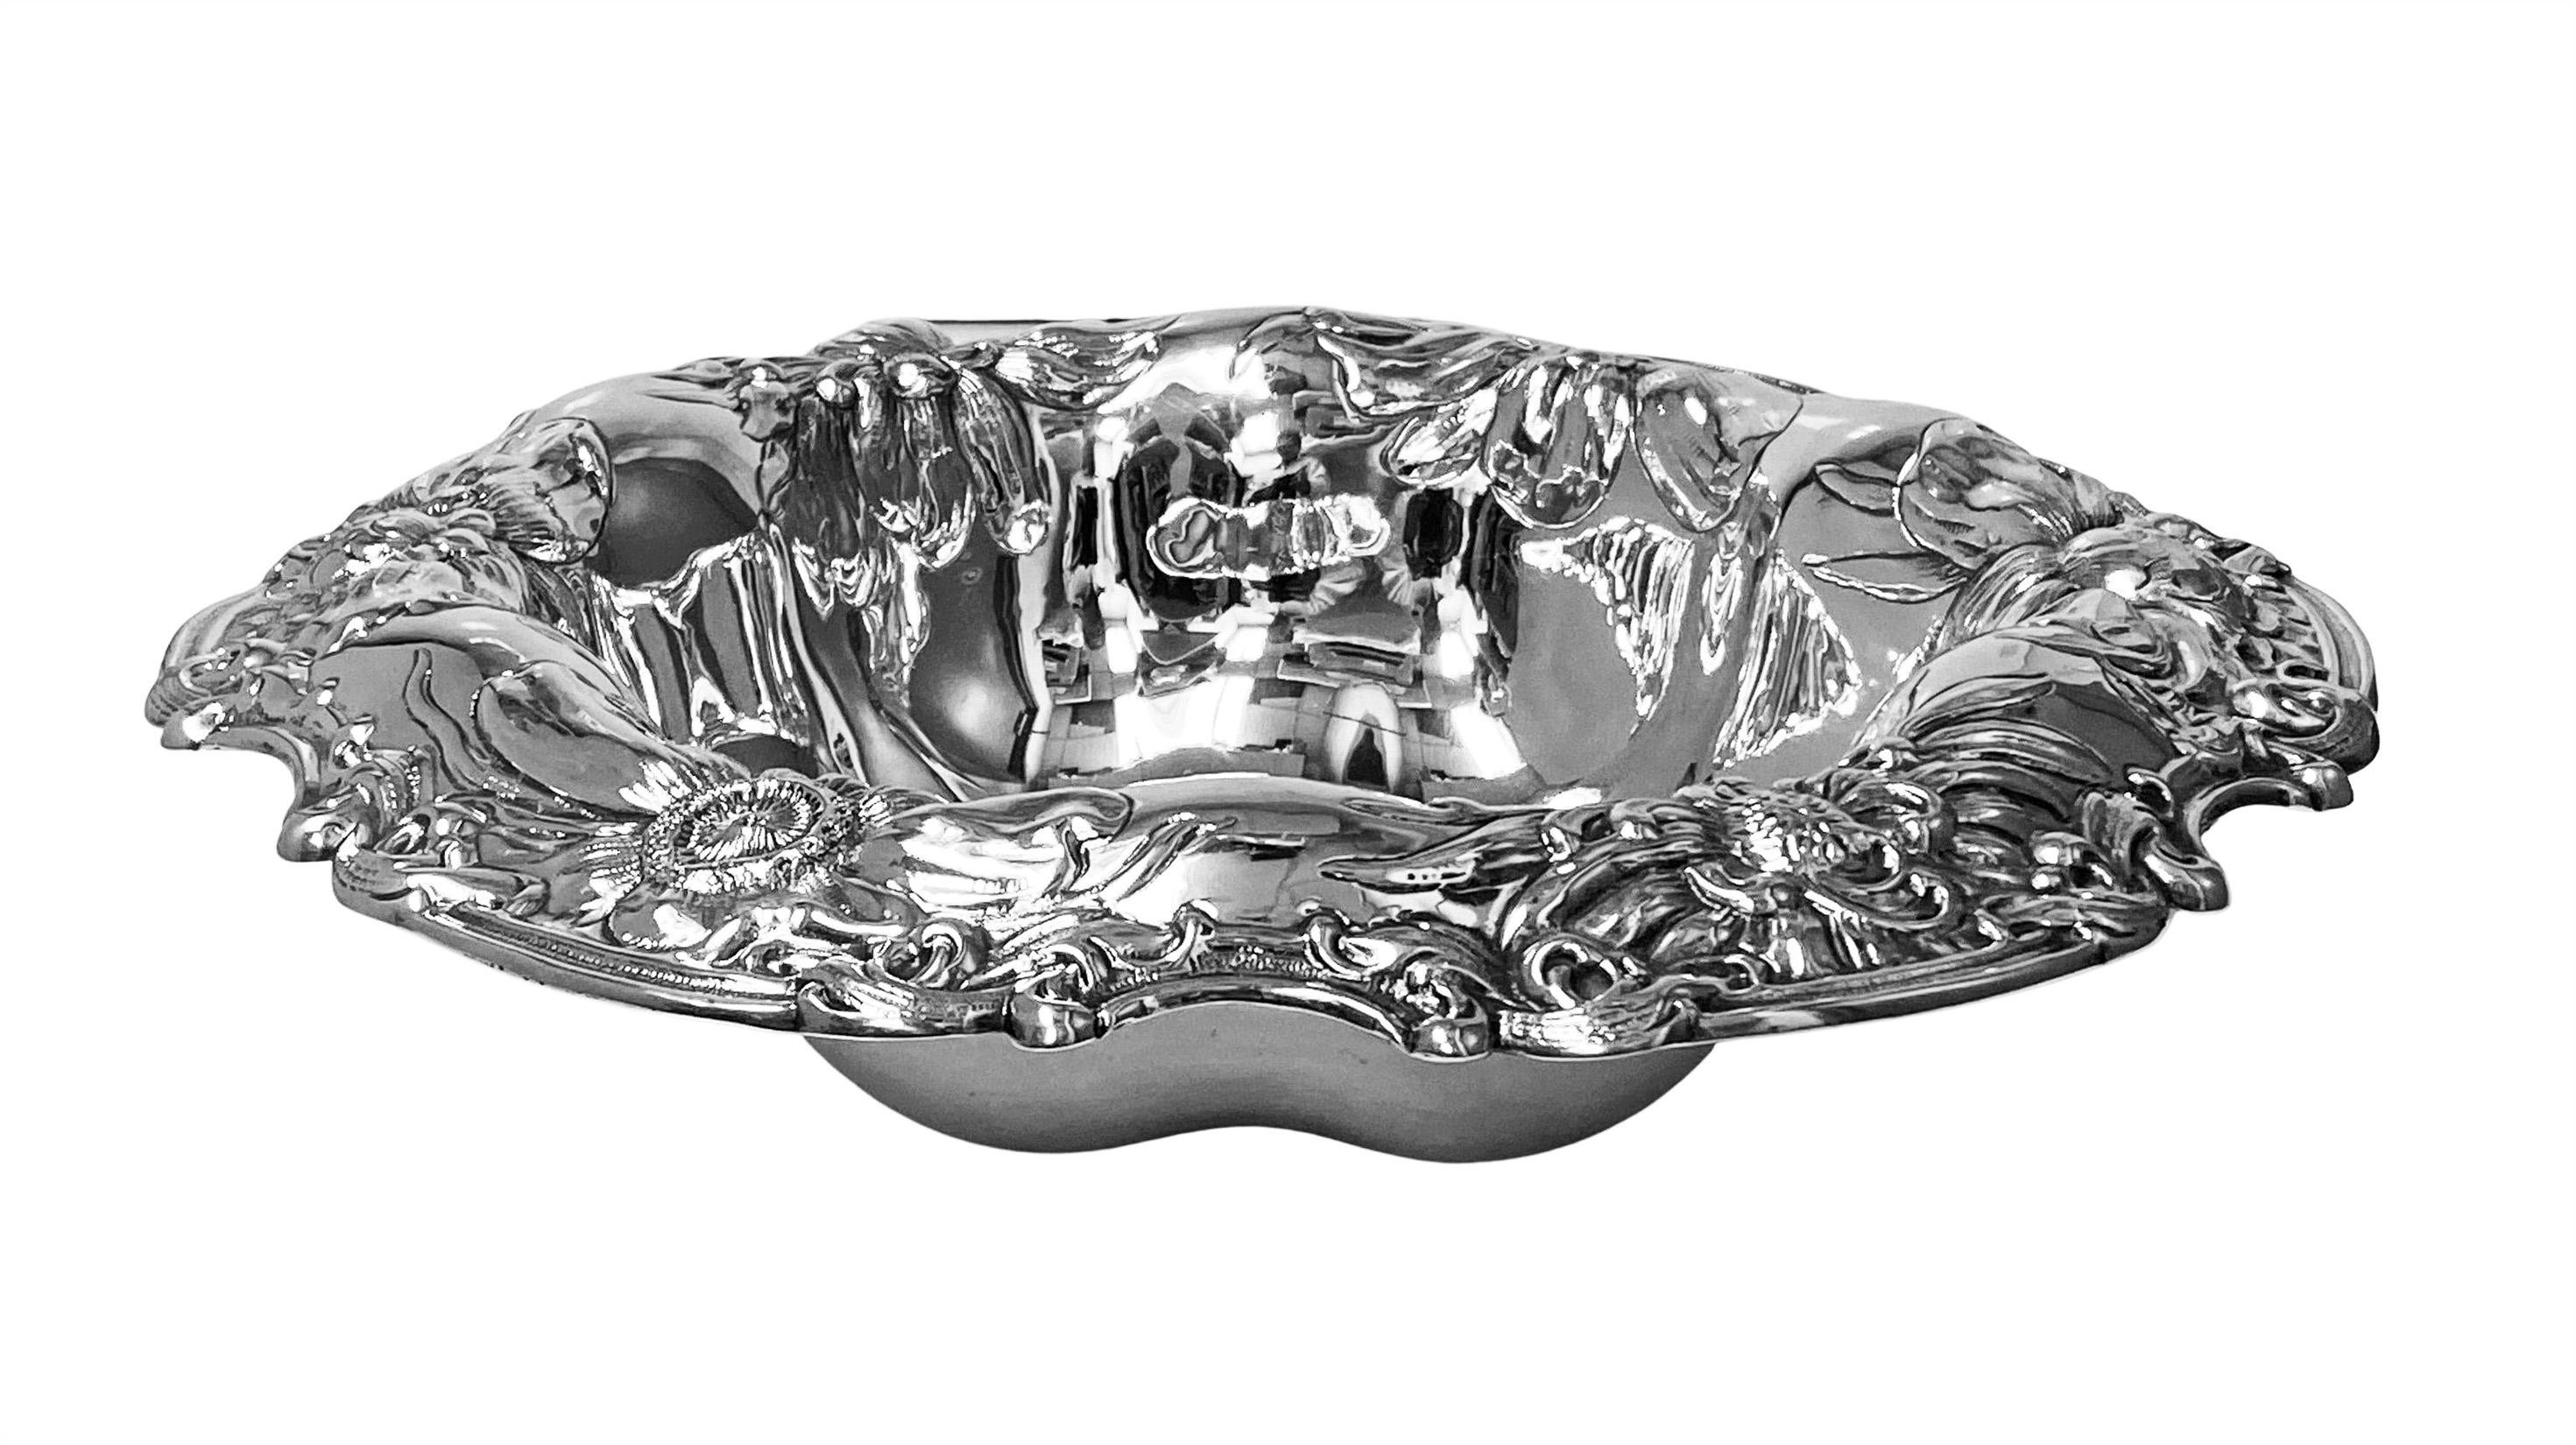 Gorham große Art Nouveau Sterling Silber Floral dekoriert Schale C.1900. Die tiefe Schale mit runder, gewellter Form ist wunderschön geprägt und ziseliert mit überlappendem Blumendekor. Vollständige Gorham-Marken auf der Unterseite und nummeriert